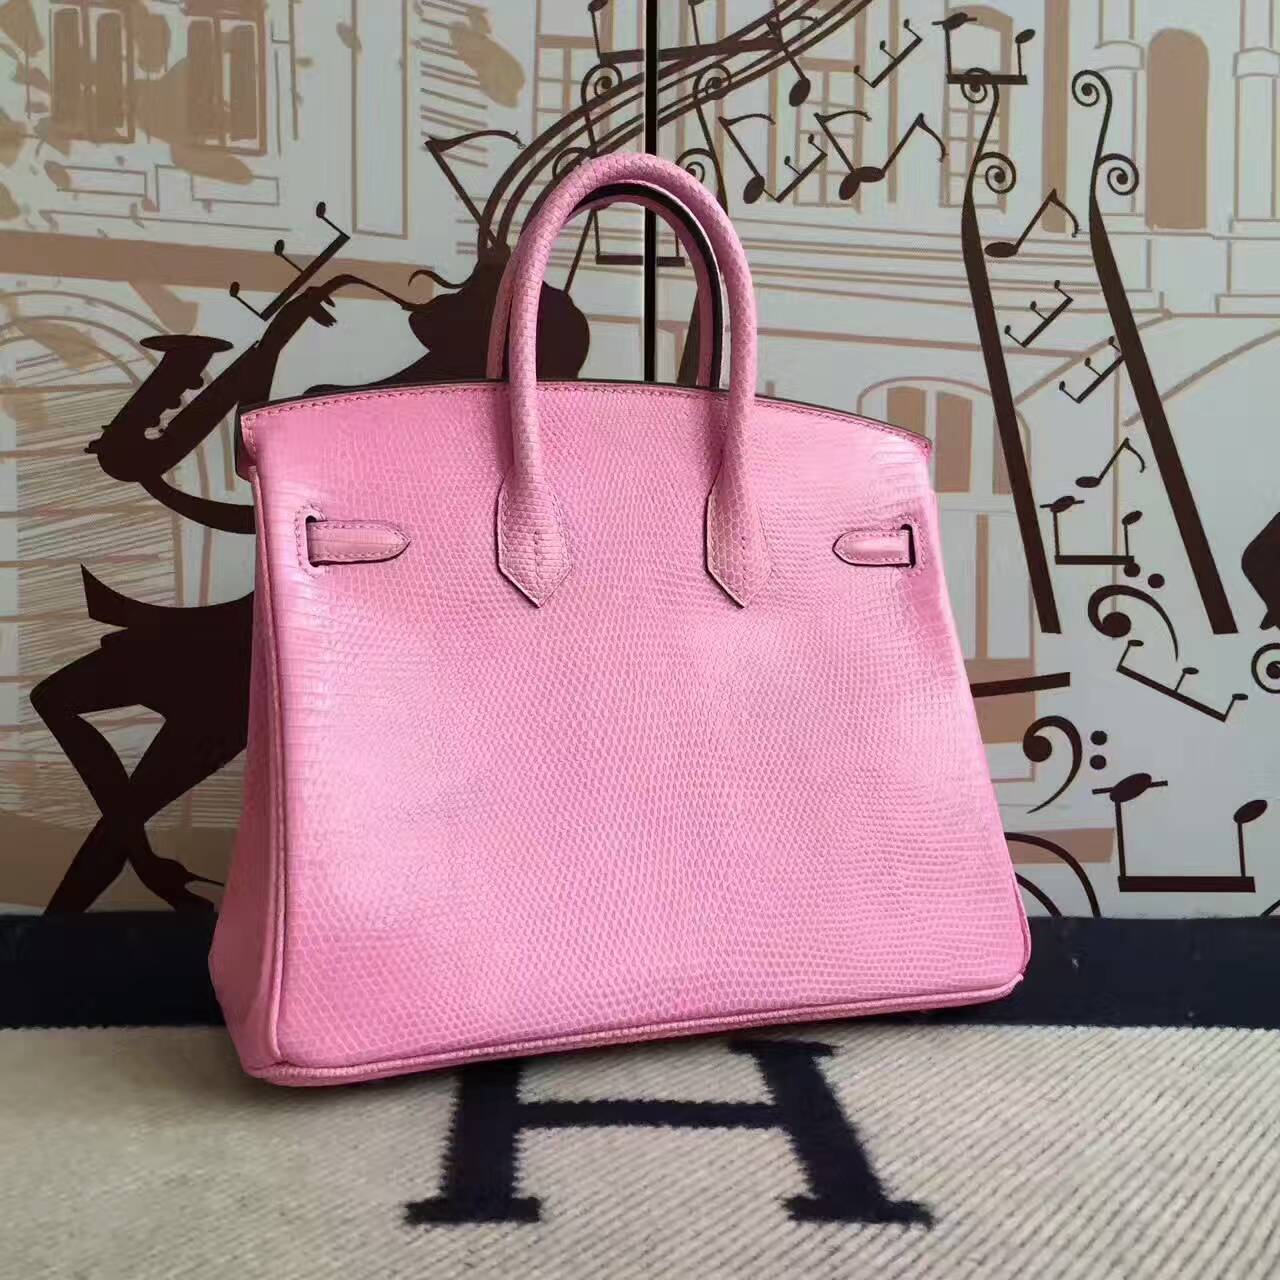 Noble Hermes Birkin Bag 25cm in 5P Rose Sakura Lizard Shiny Leather